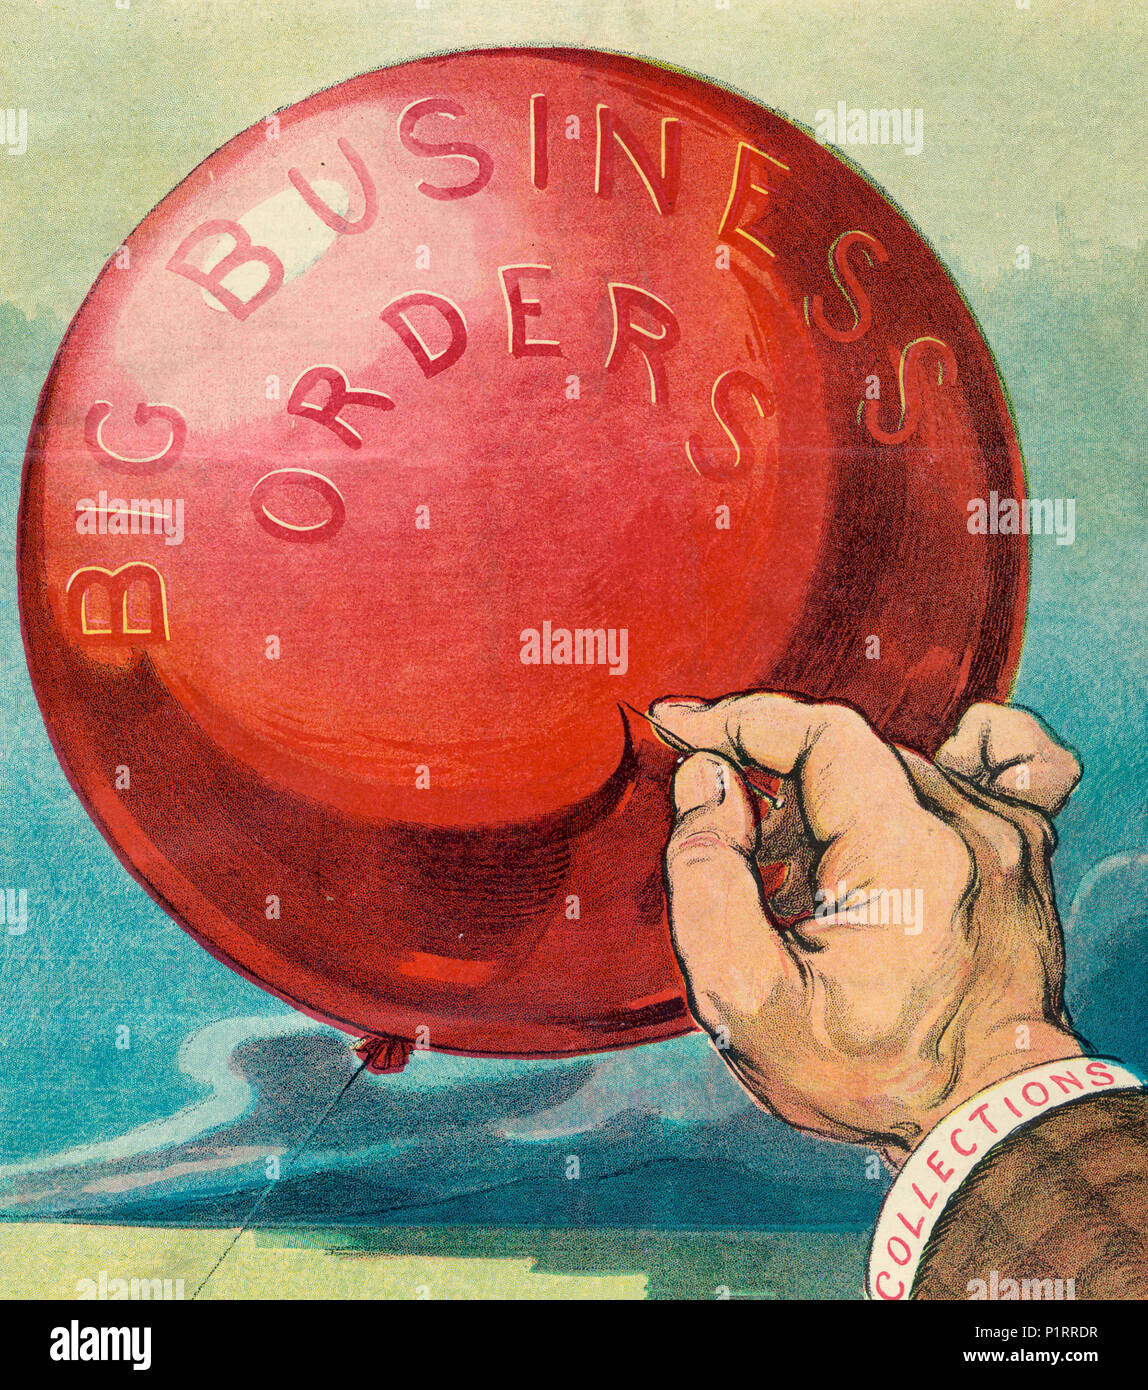 L'illustration montre une main marqués 'Collections' avec une broche, sur le point de pop un gros ballon rouge marqués 'grandes commandes entreprises'. Caricature politique, vers 1907 Banque D'Images